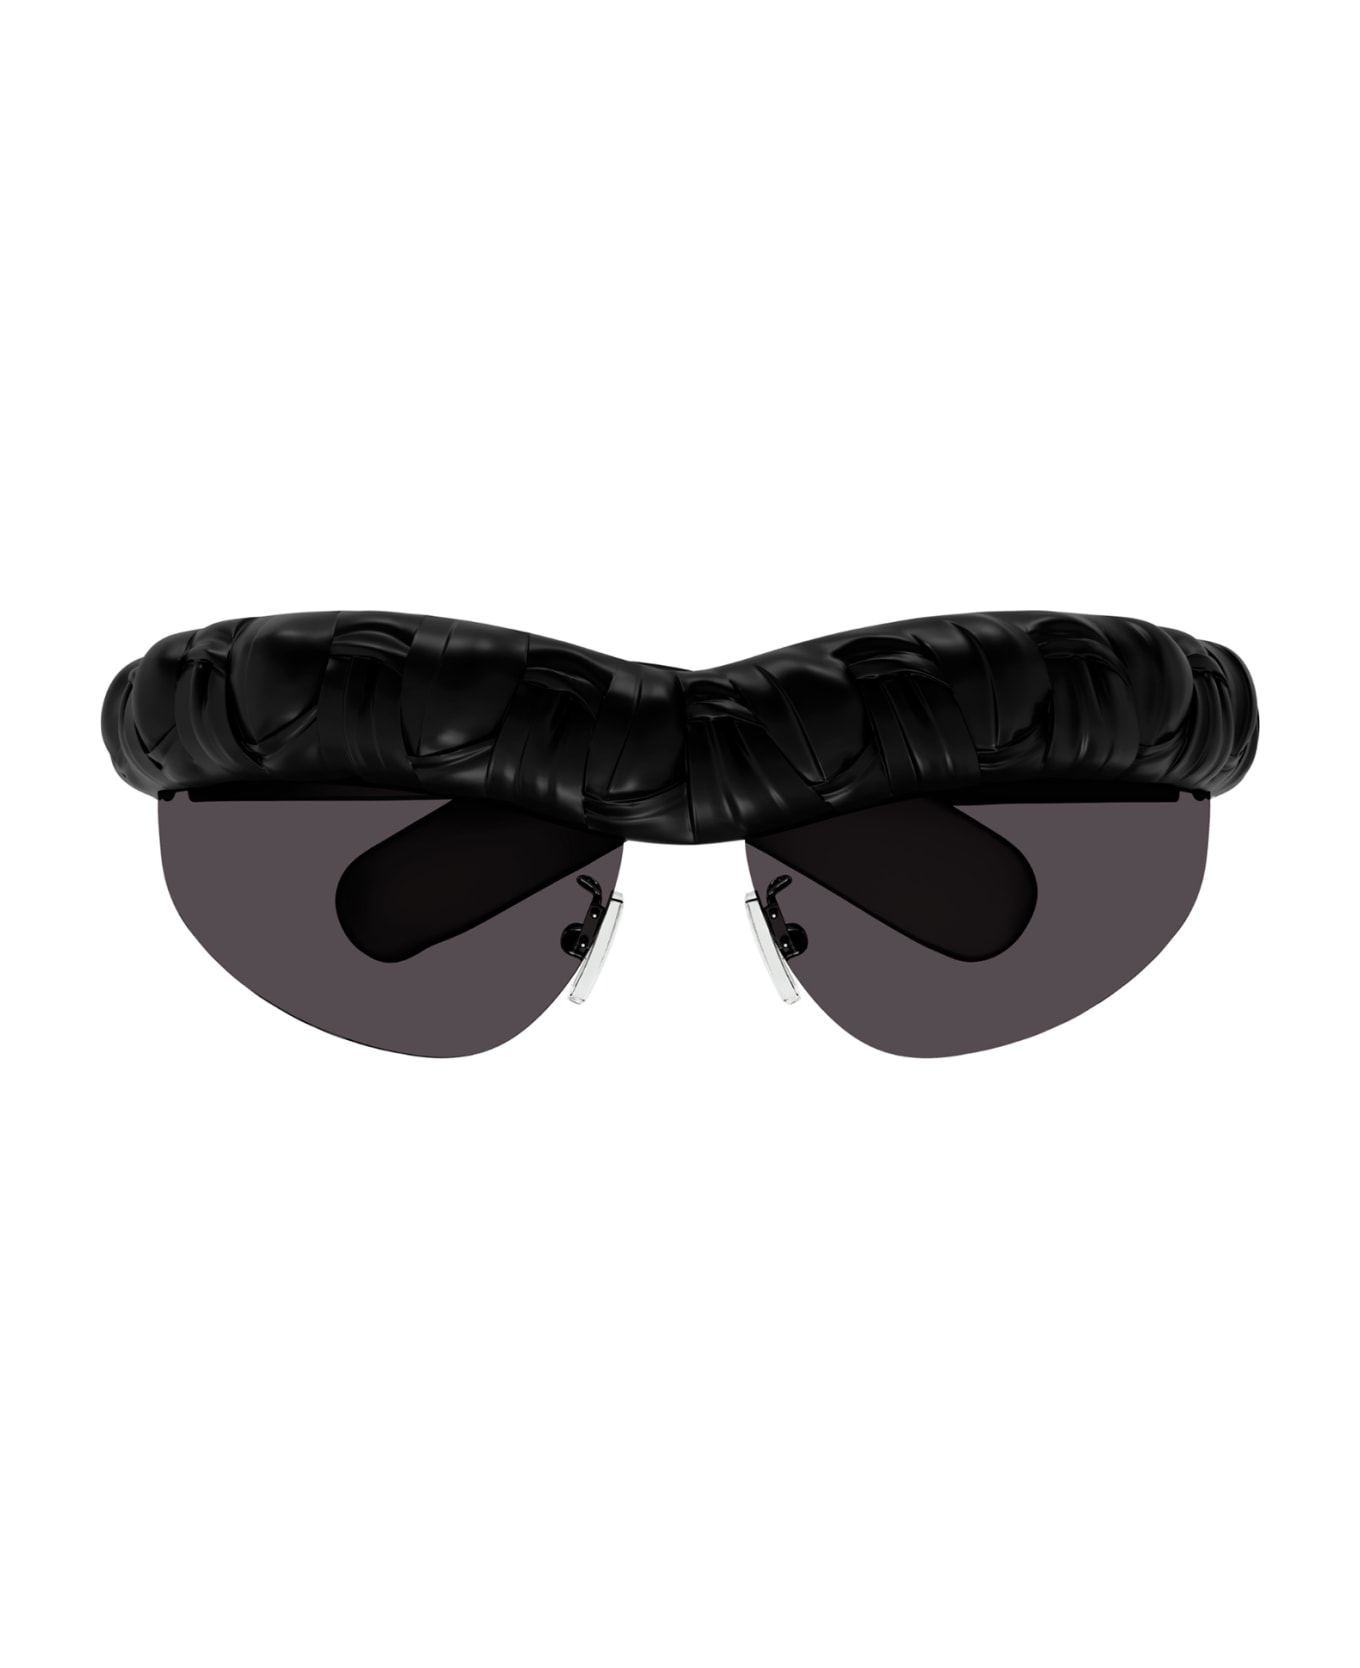 Bottega Veneta Eyewear 1evs4kb0a - Black Black Grey